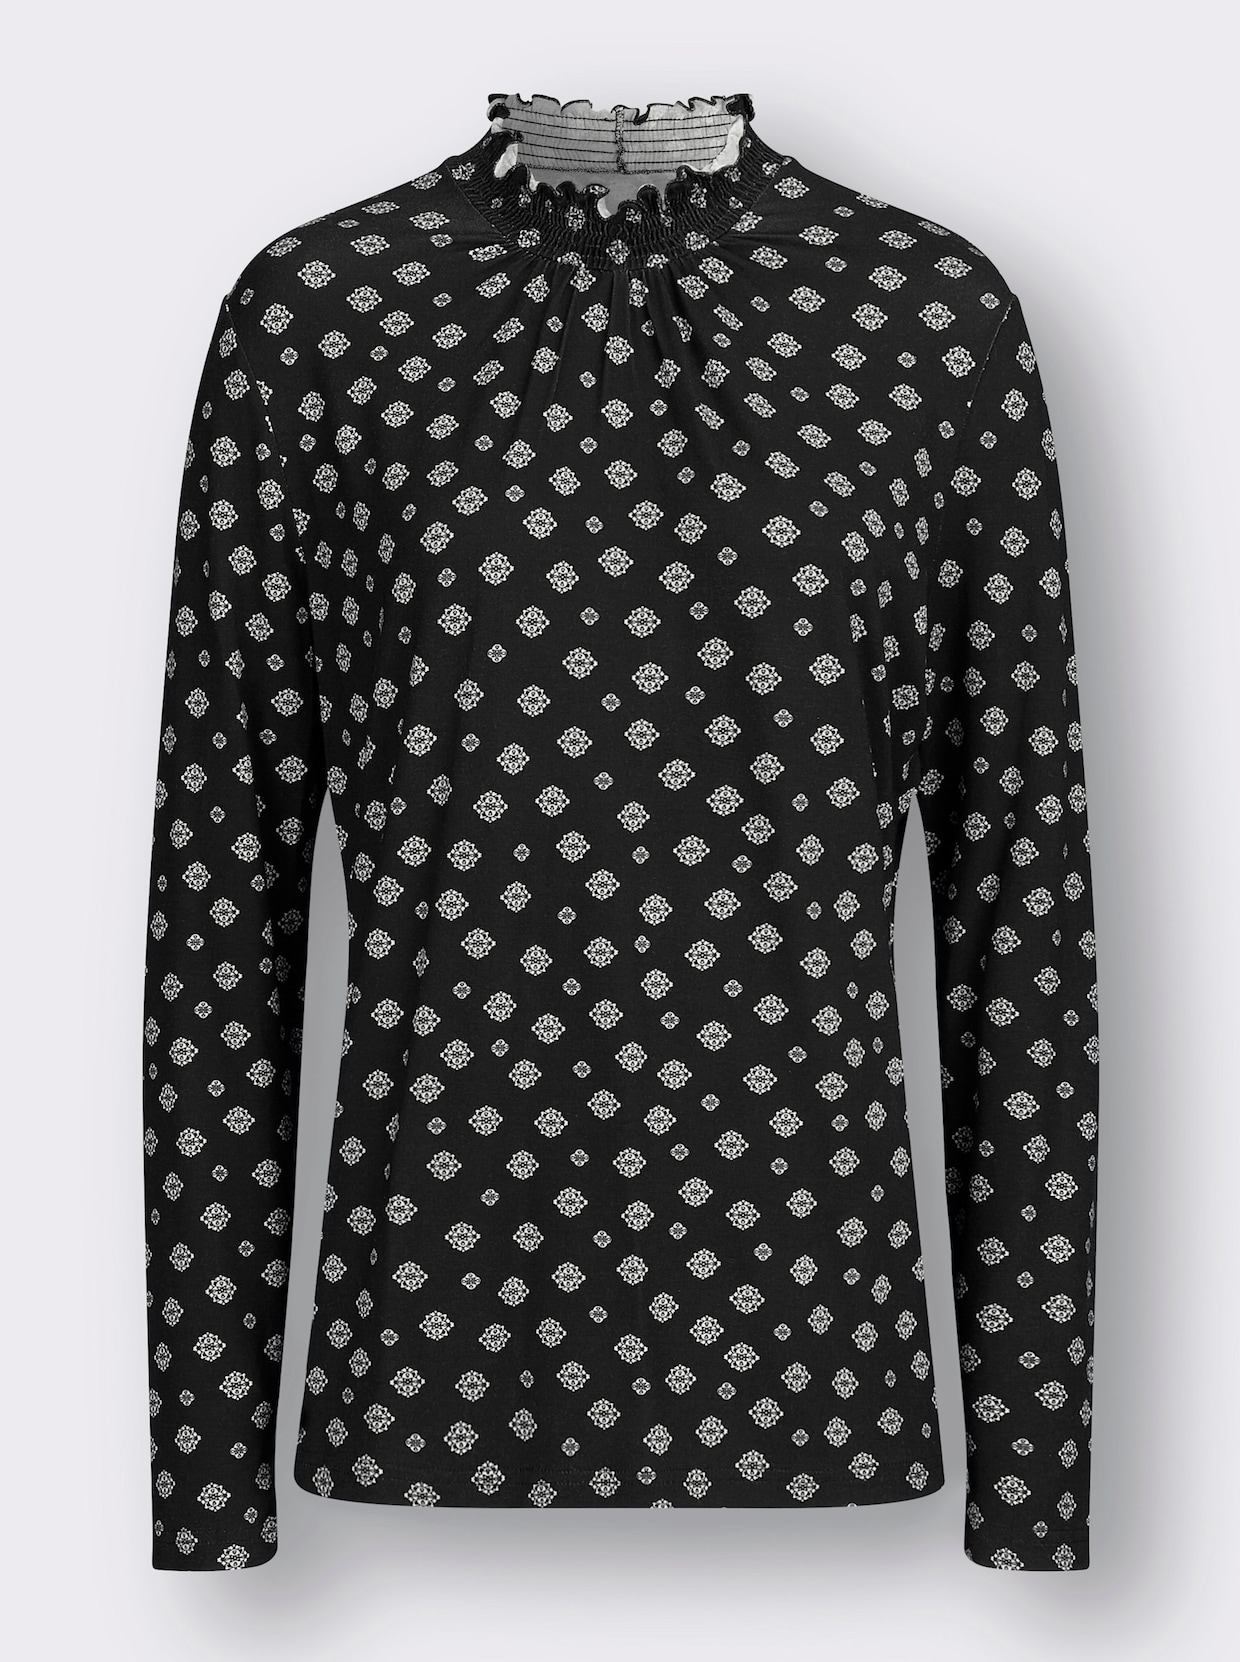 Potlačené tričko - Black-ecru zafarbeniu krému tlače